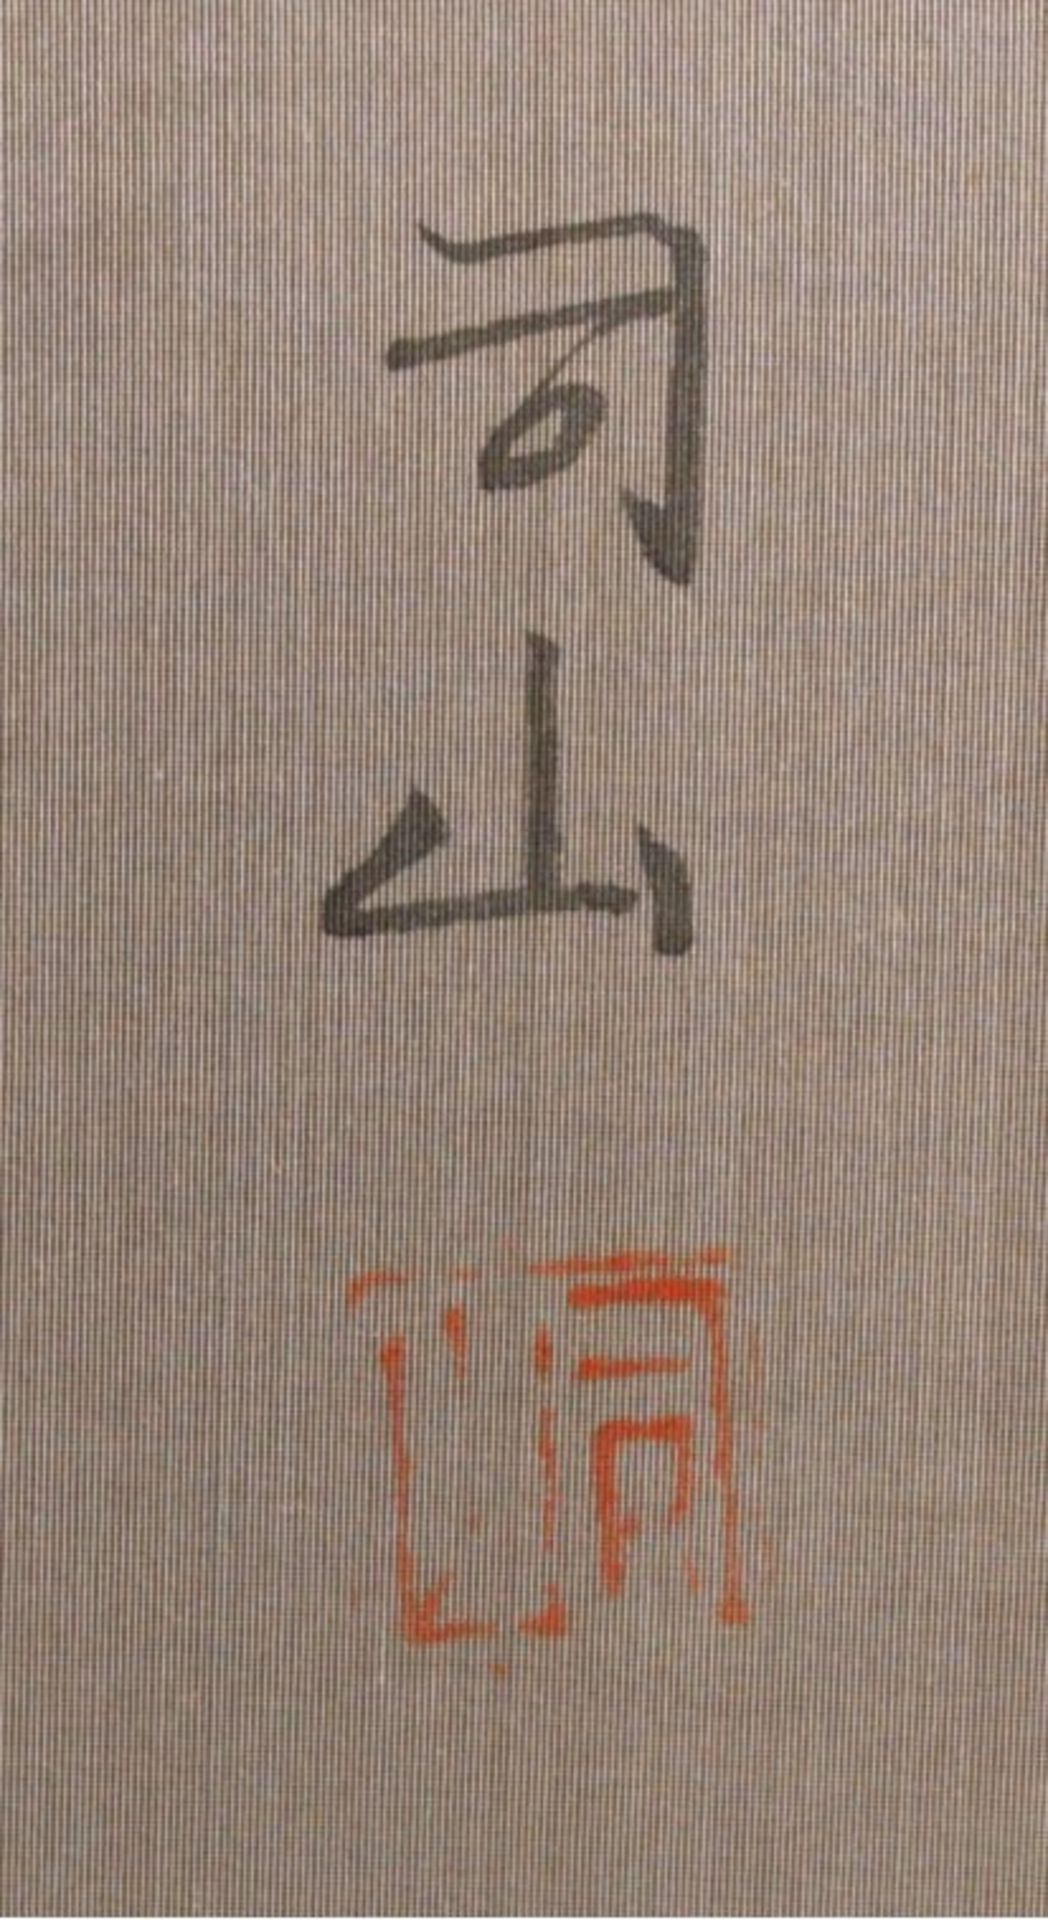 Chinesisches WandbildSehr feine Landschafstmalerei auf Seide, Stempelmarke undSignatur, Klappbild, - Bild 4 aus 4